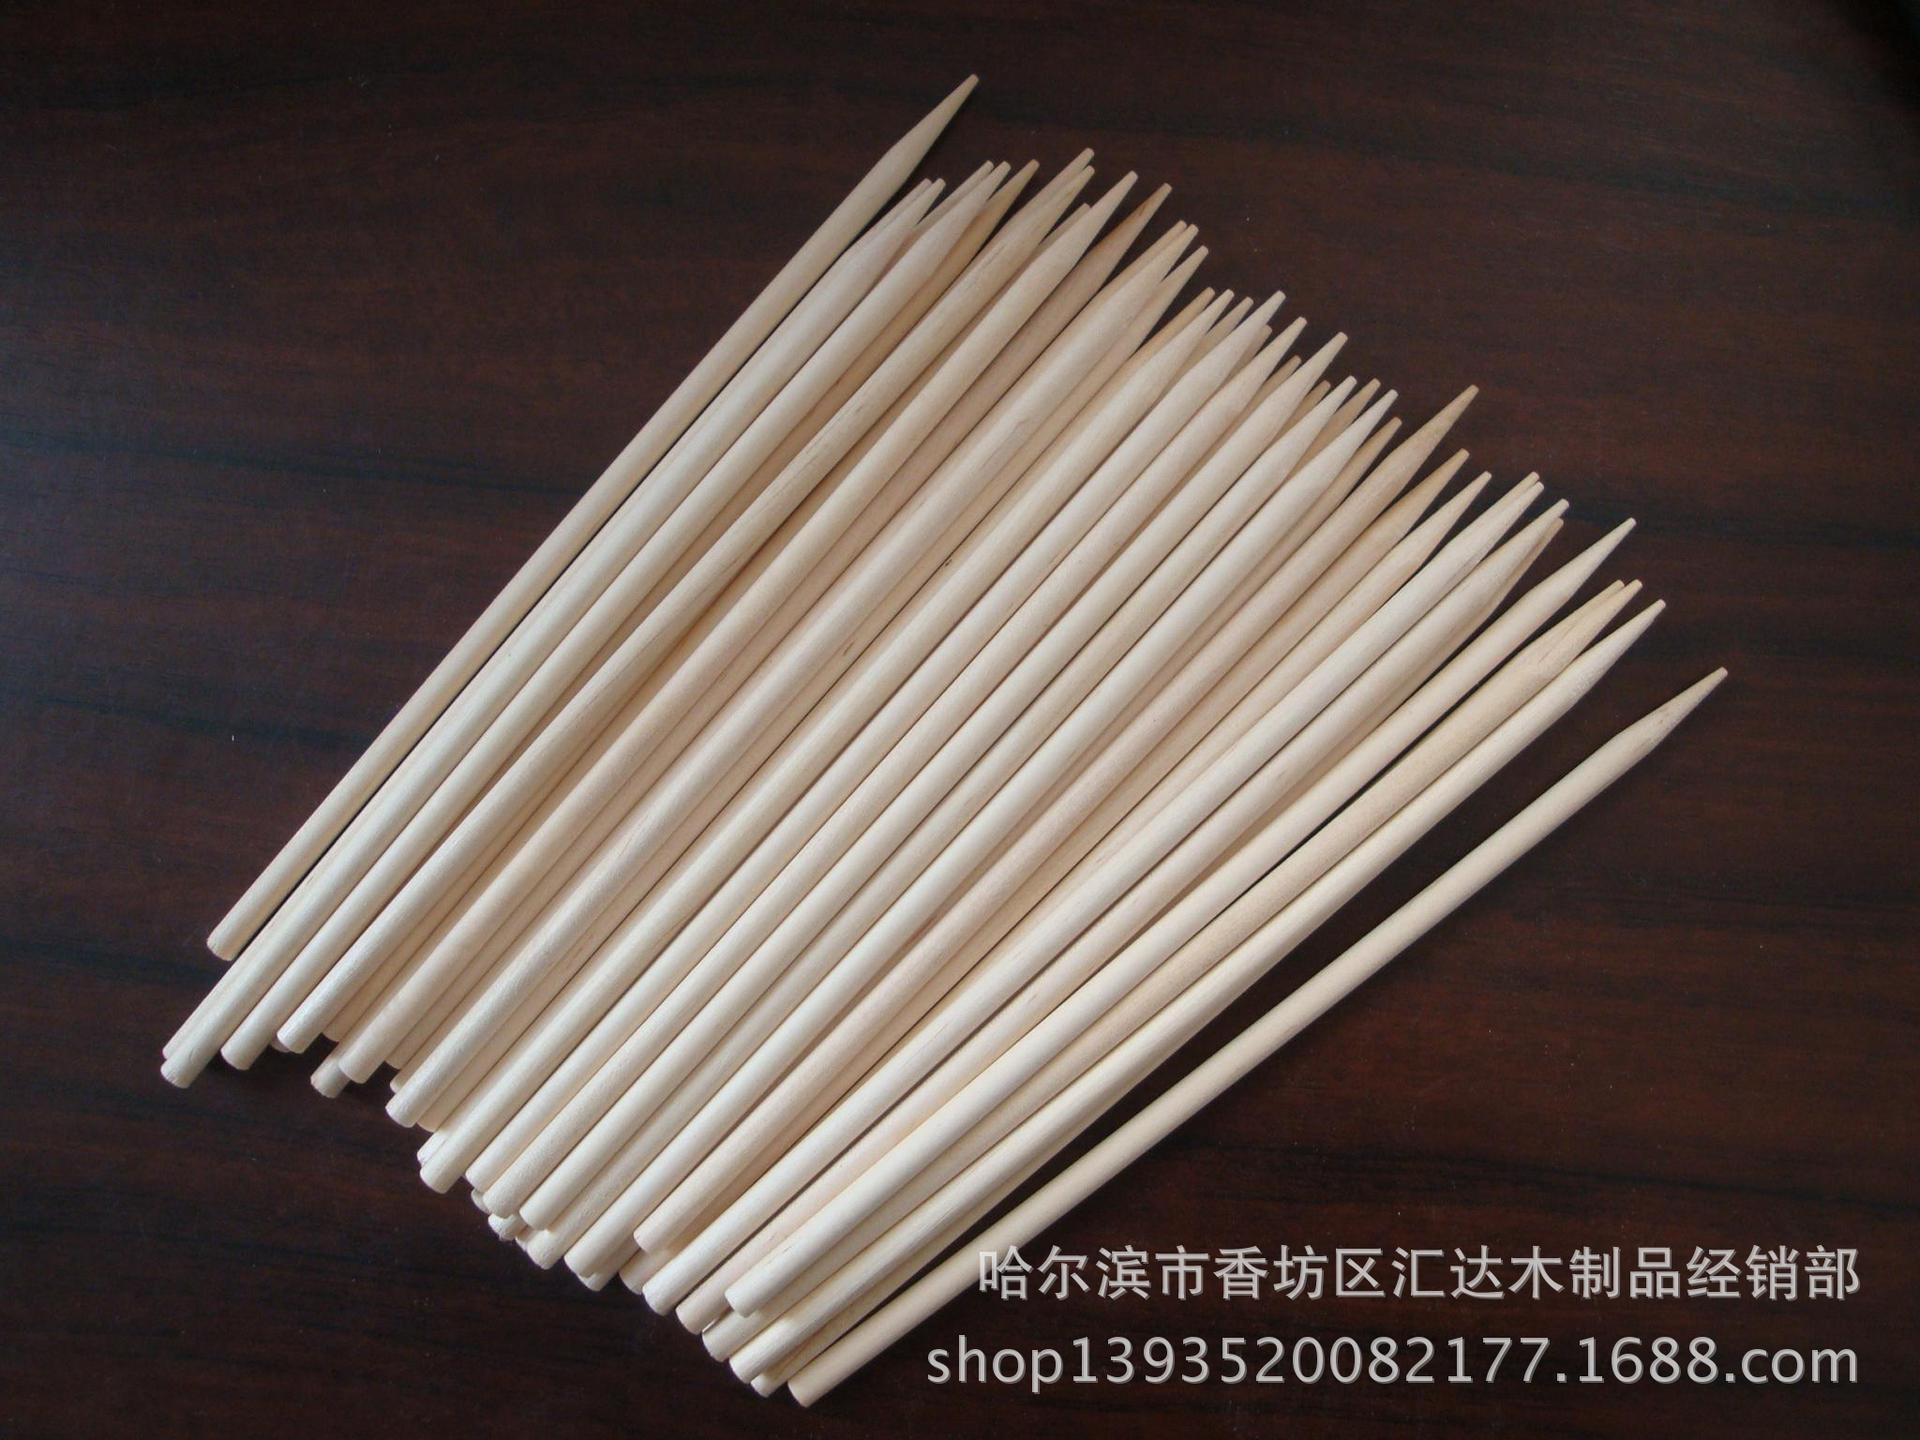 厂家供应糖棒 圆木糖棒 环保磨尖糖棒 一次性木质糖棒示例图7